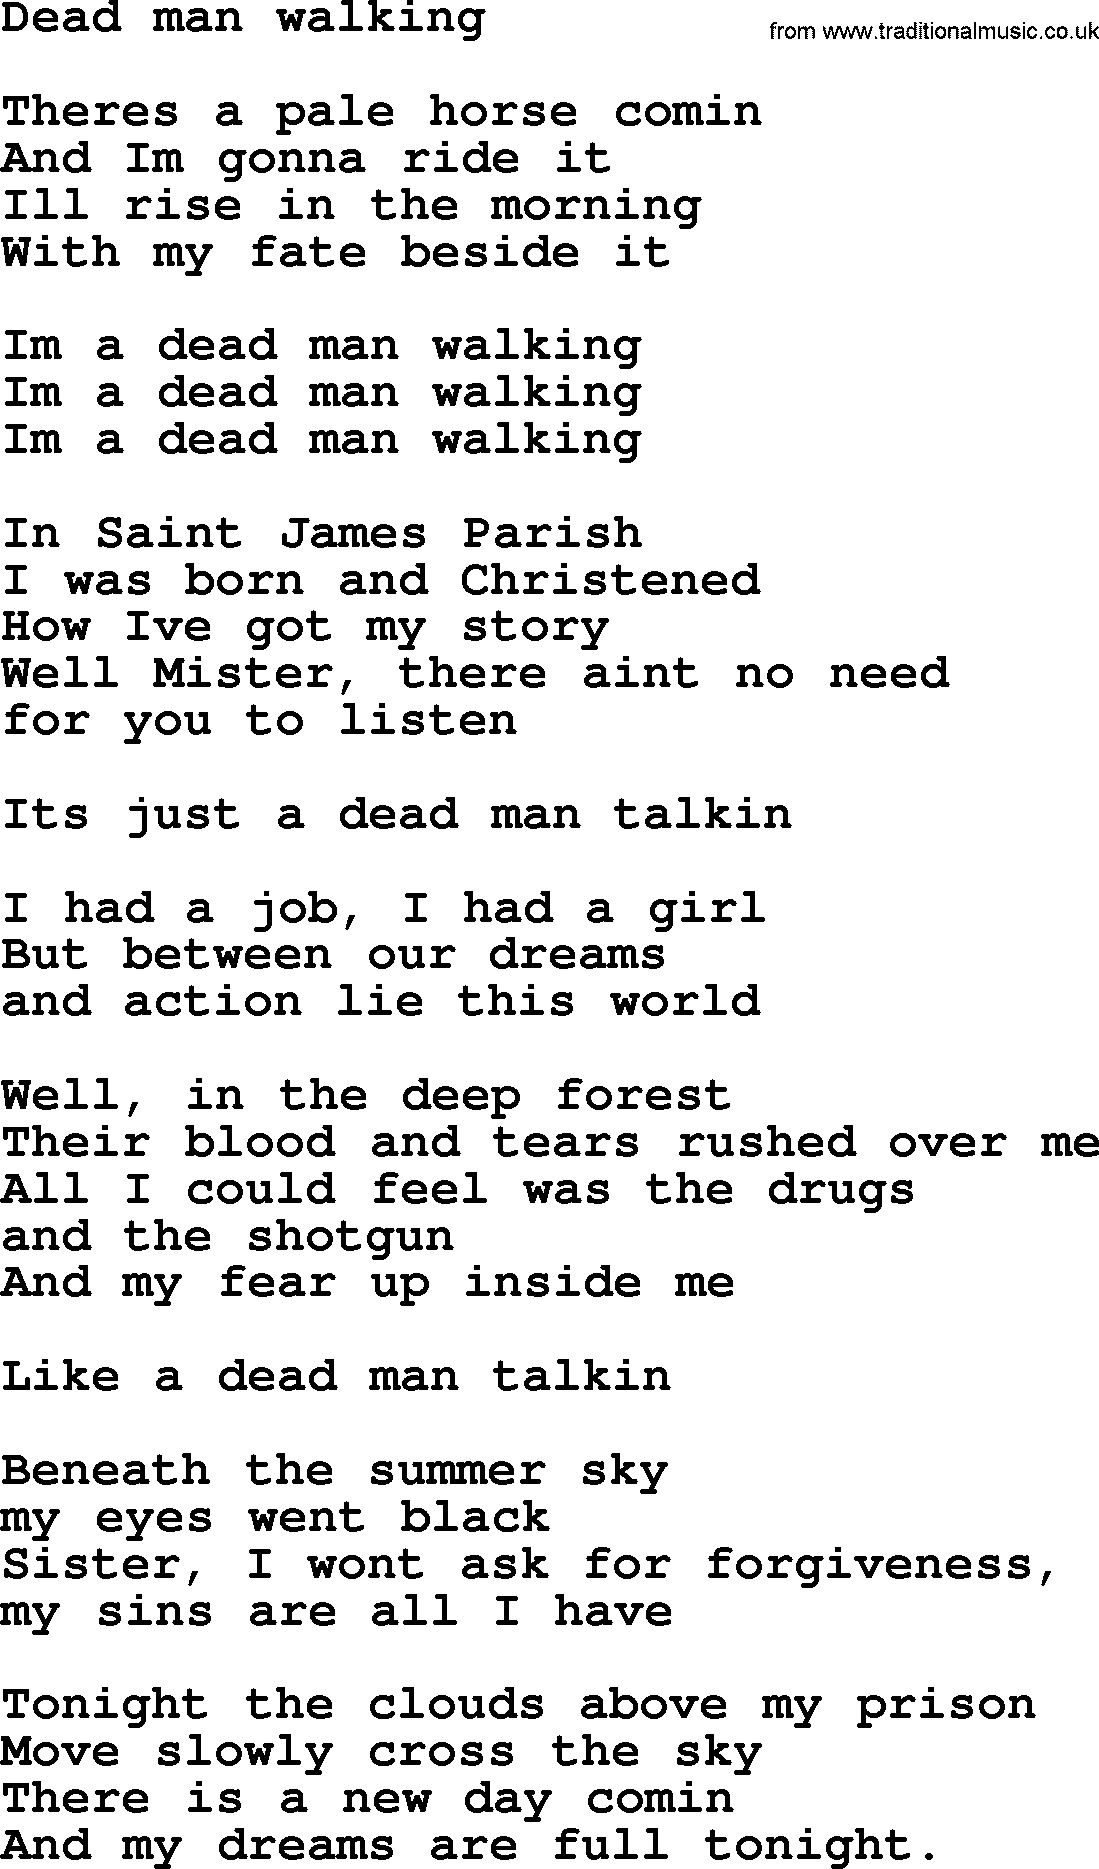 Bruce Springsteen song: Dead Man Walking lyrics